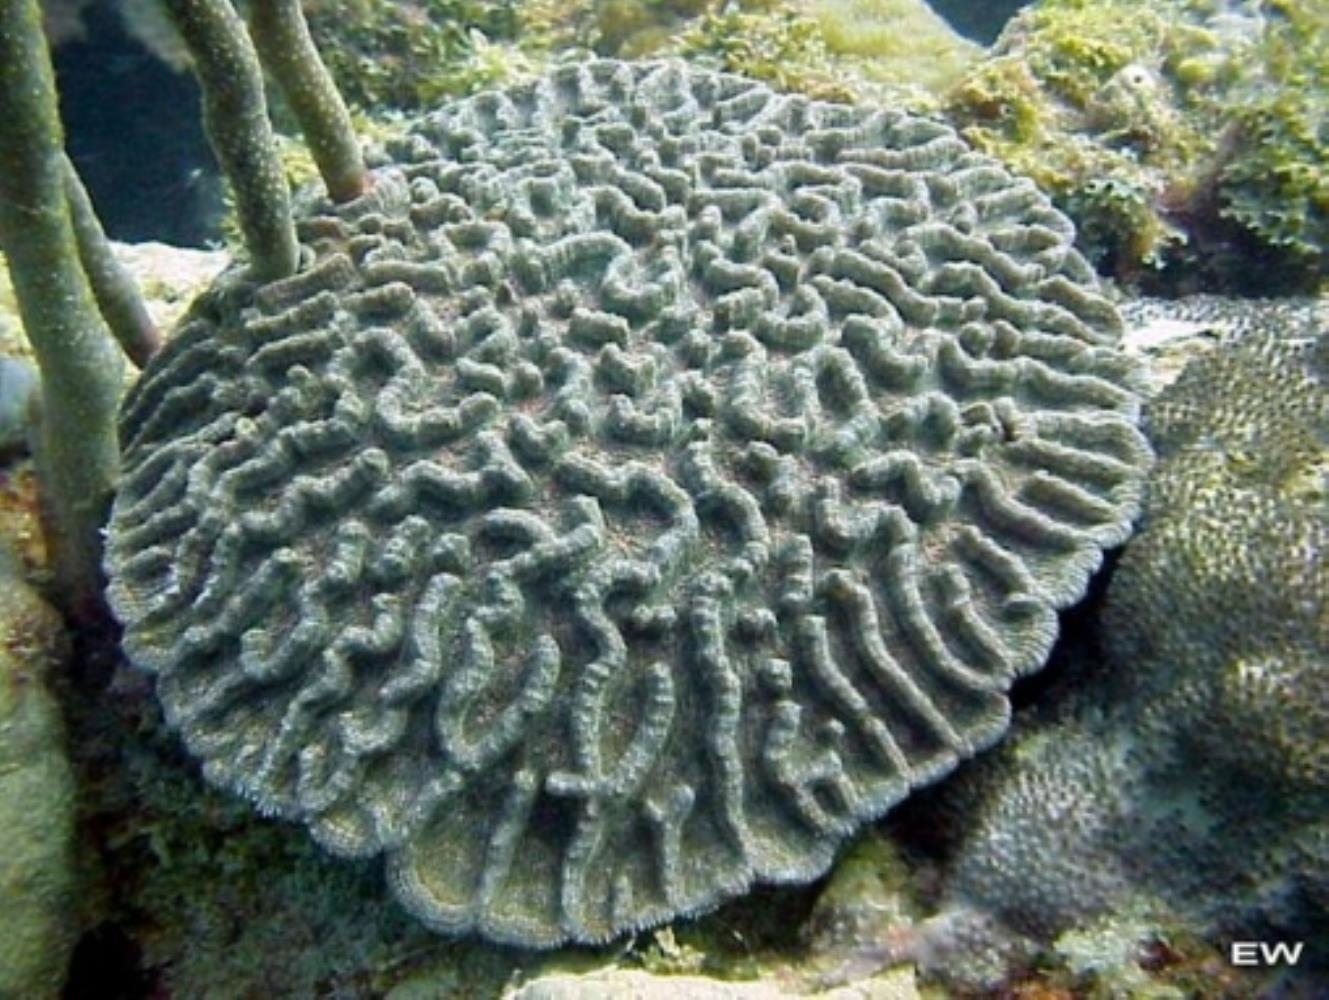 Lowridge Cactus Coral